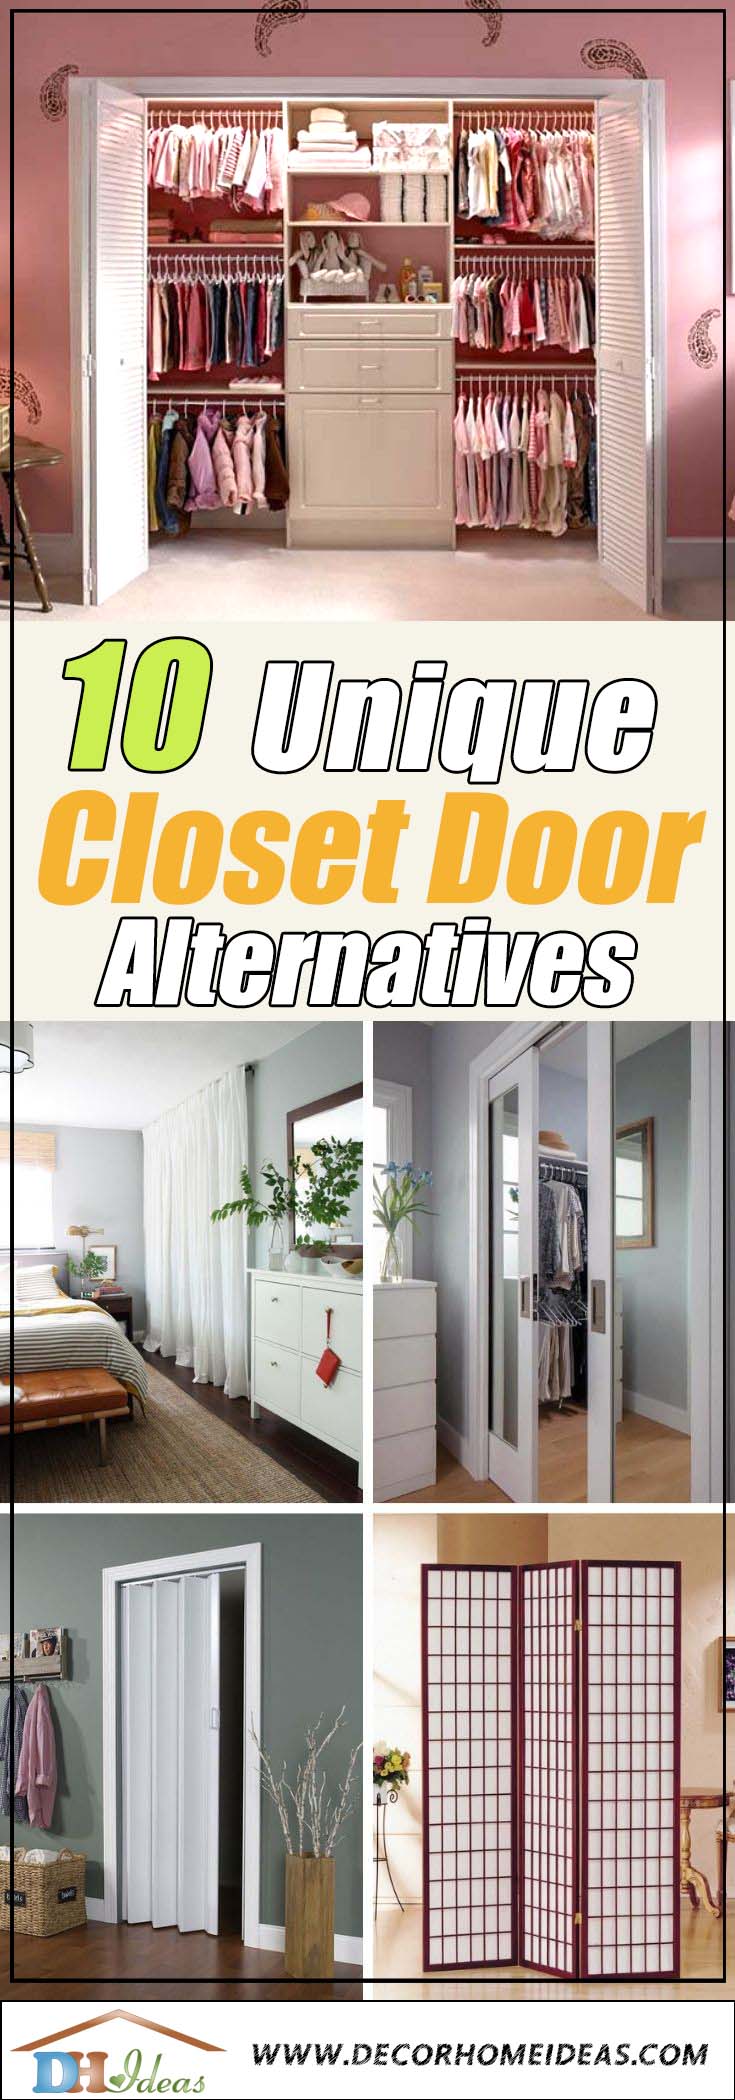 Лучшие альтернативы и варианты дверных шкафов #closet #doors #organization #decorhomeideas